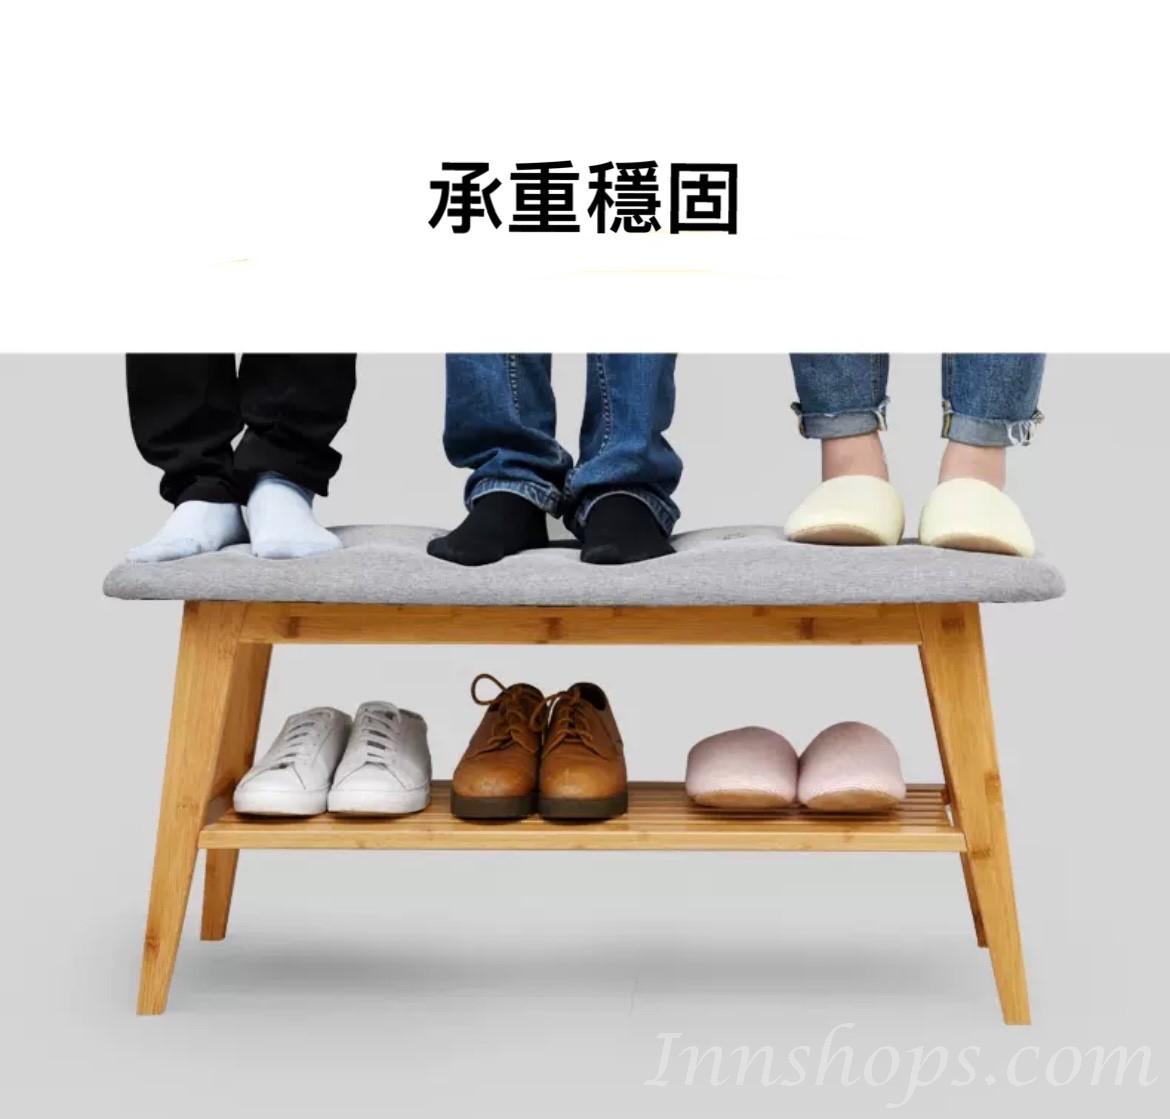 楠竹布藝換鞋凳*60/90cm(IS7706)